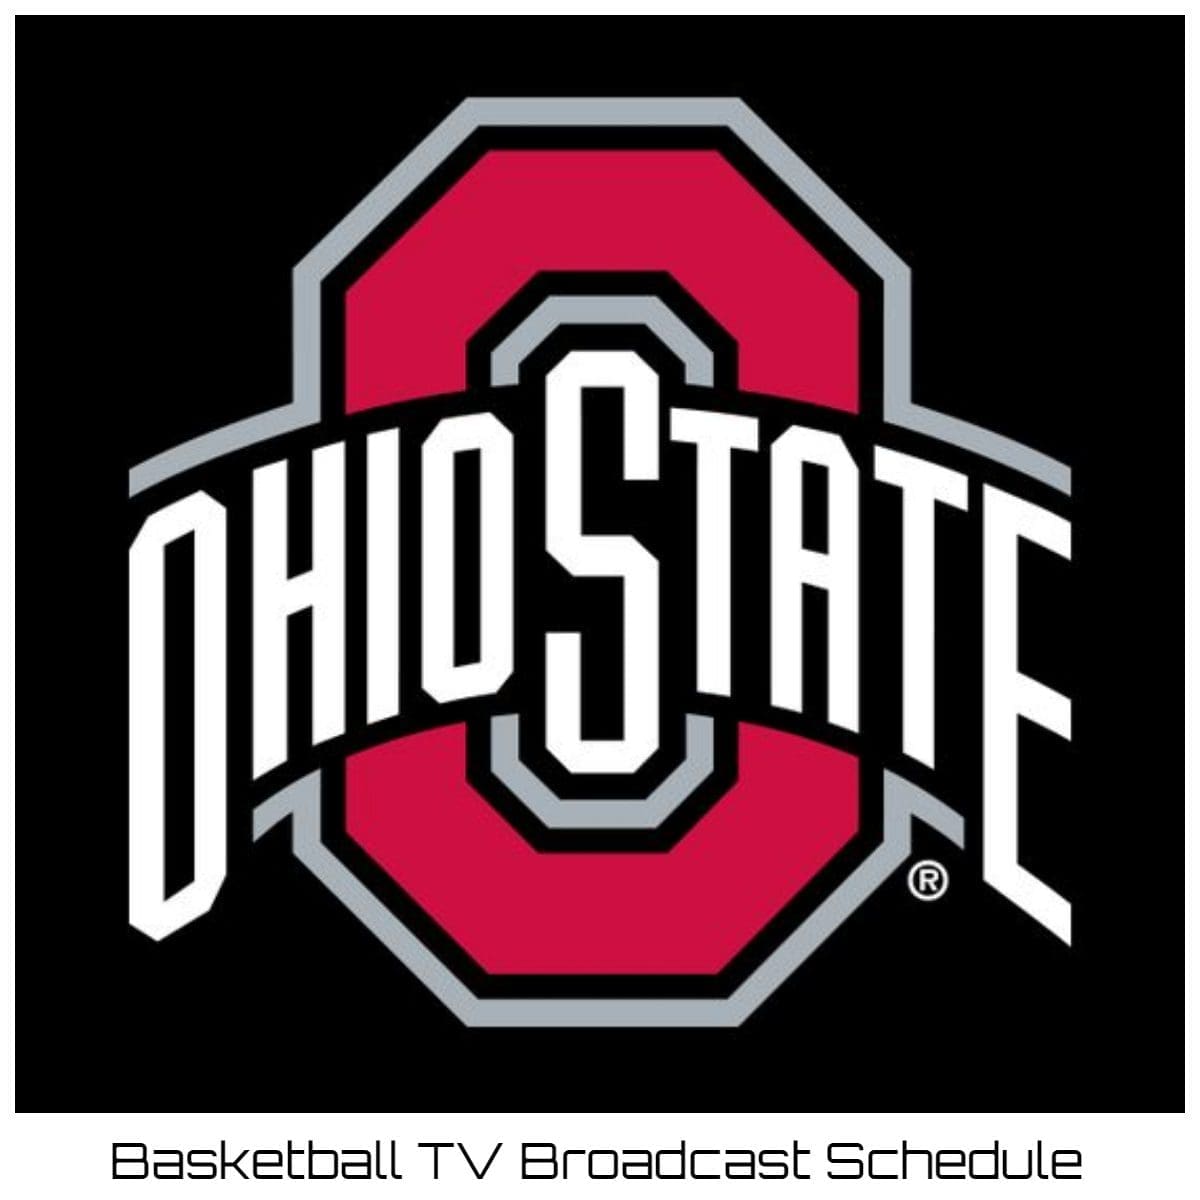 Ohio State Buckeyes Basketball TV Broadcast Schedule 2022-23